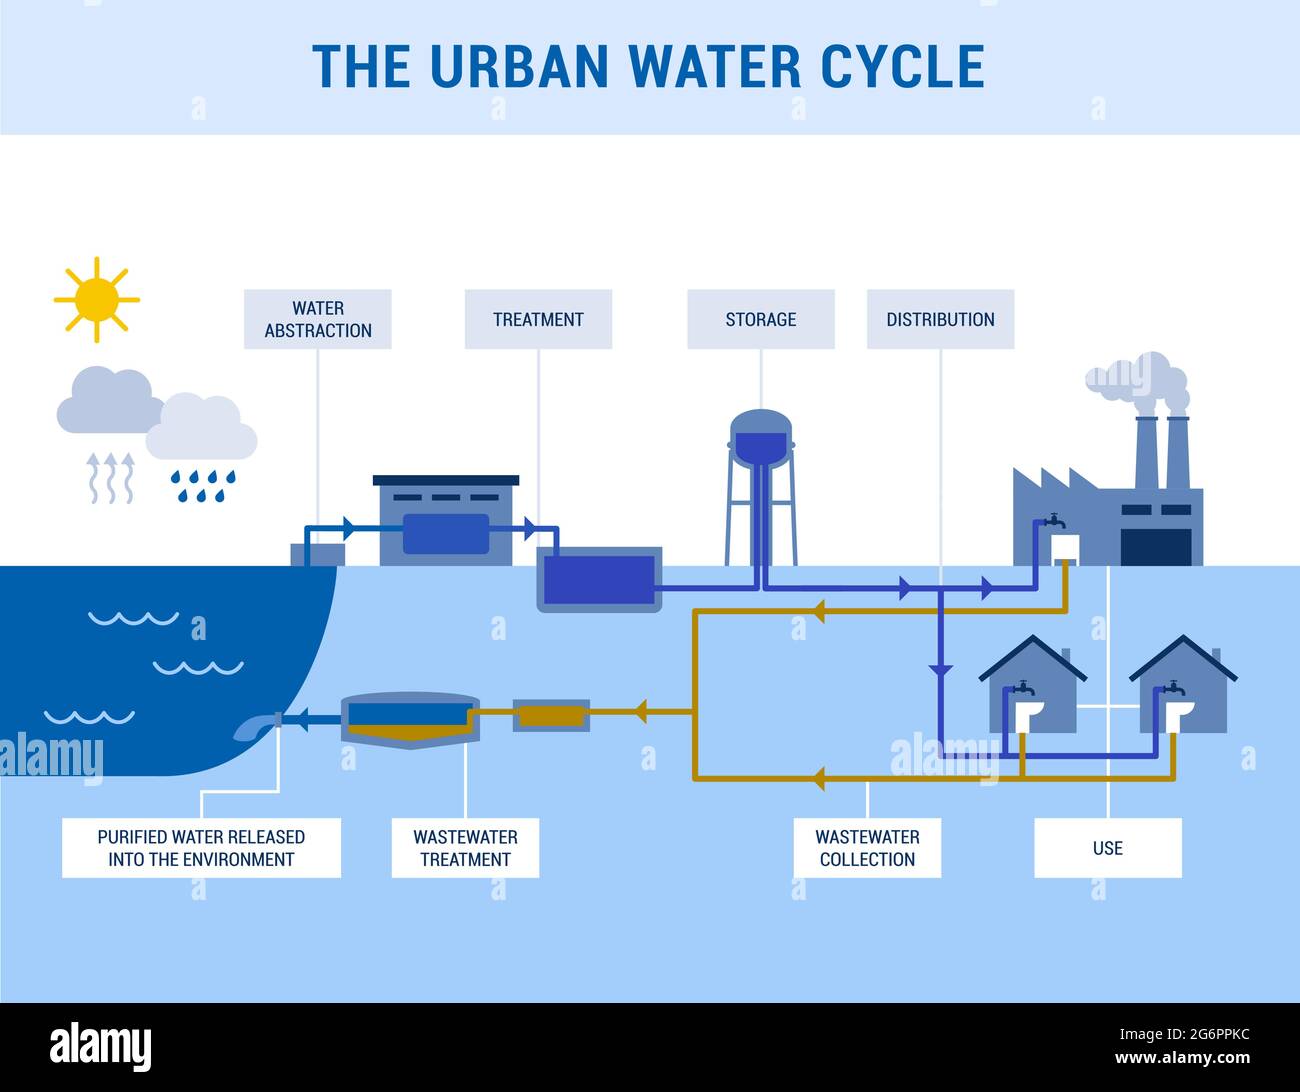 Le cycle urbain de l'eau : abstraction, traitement, distribution et gestion des eaux usées Illustration de Vecteur